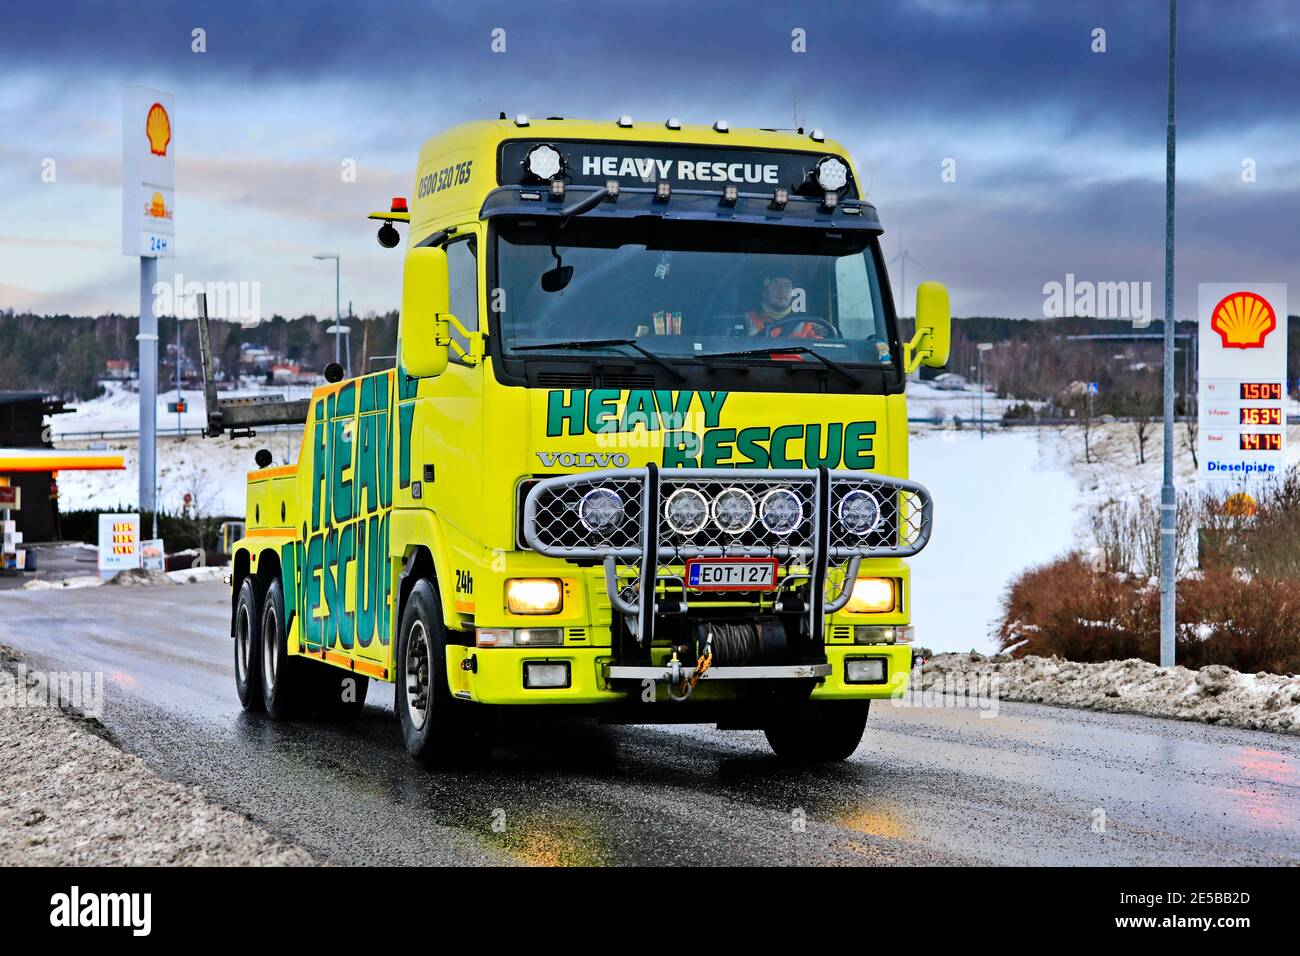 Vehículo de recuperación de servicio pesado de Heavy Rescue Europe Oy, utilizado para el remolque de semi camiones que salen de la parada de camiones el día del invierno. Salo, Finlandia. 23 de enero de 2021 Foto de stock